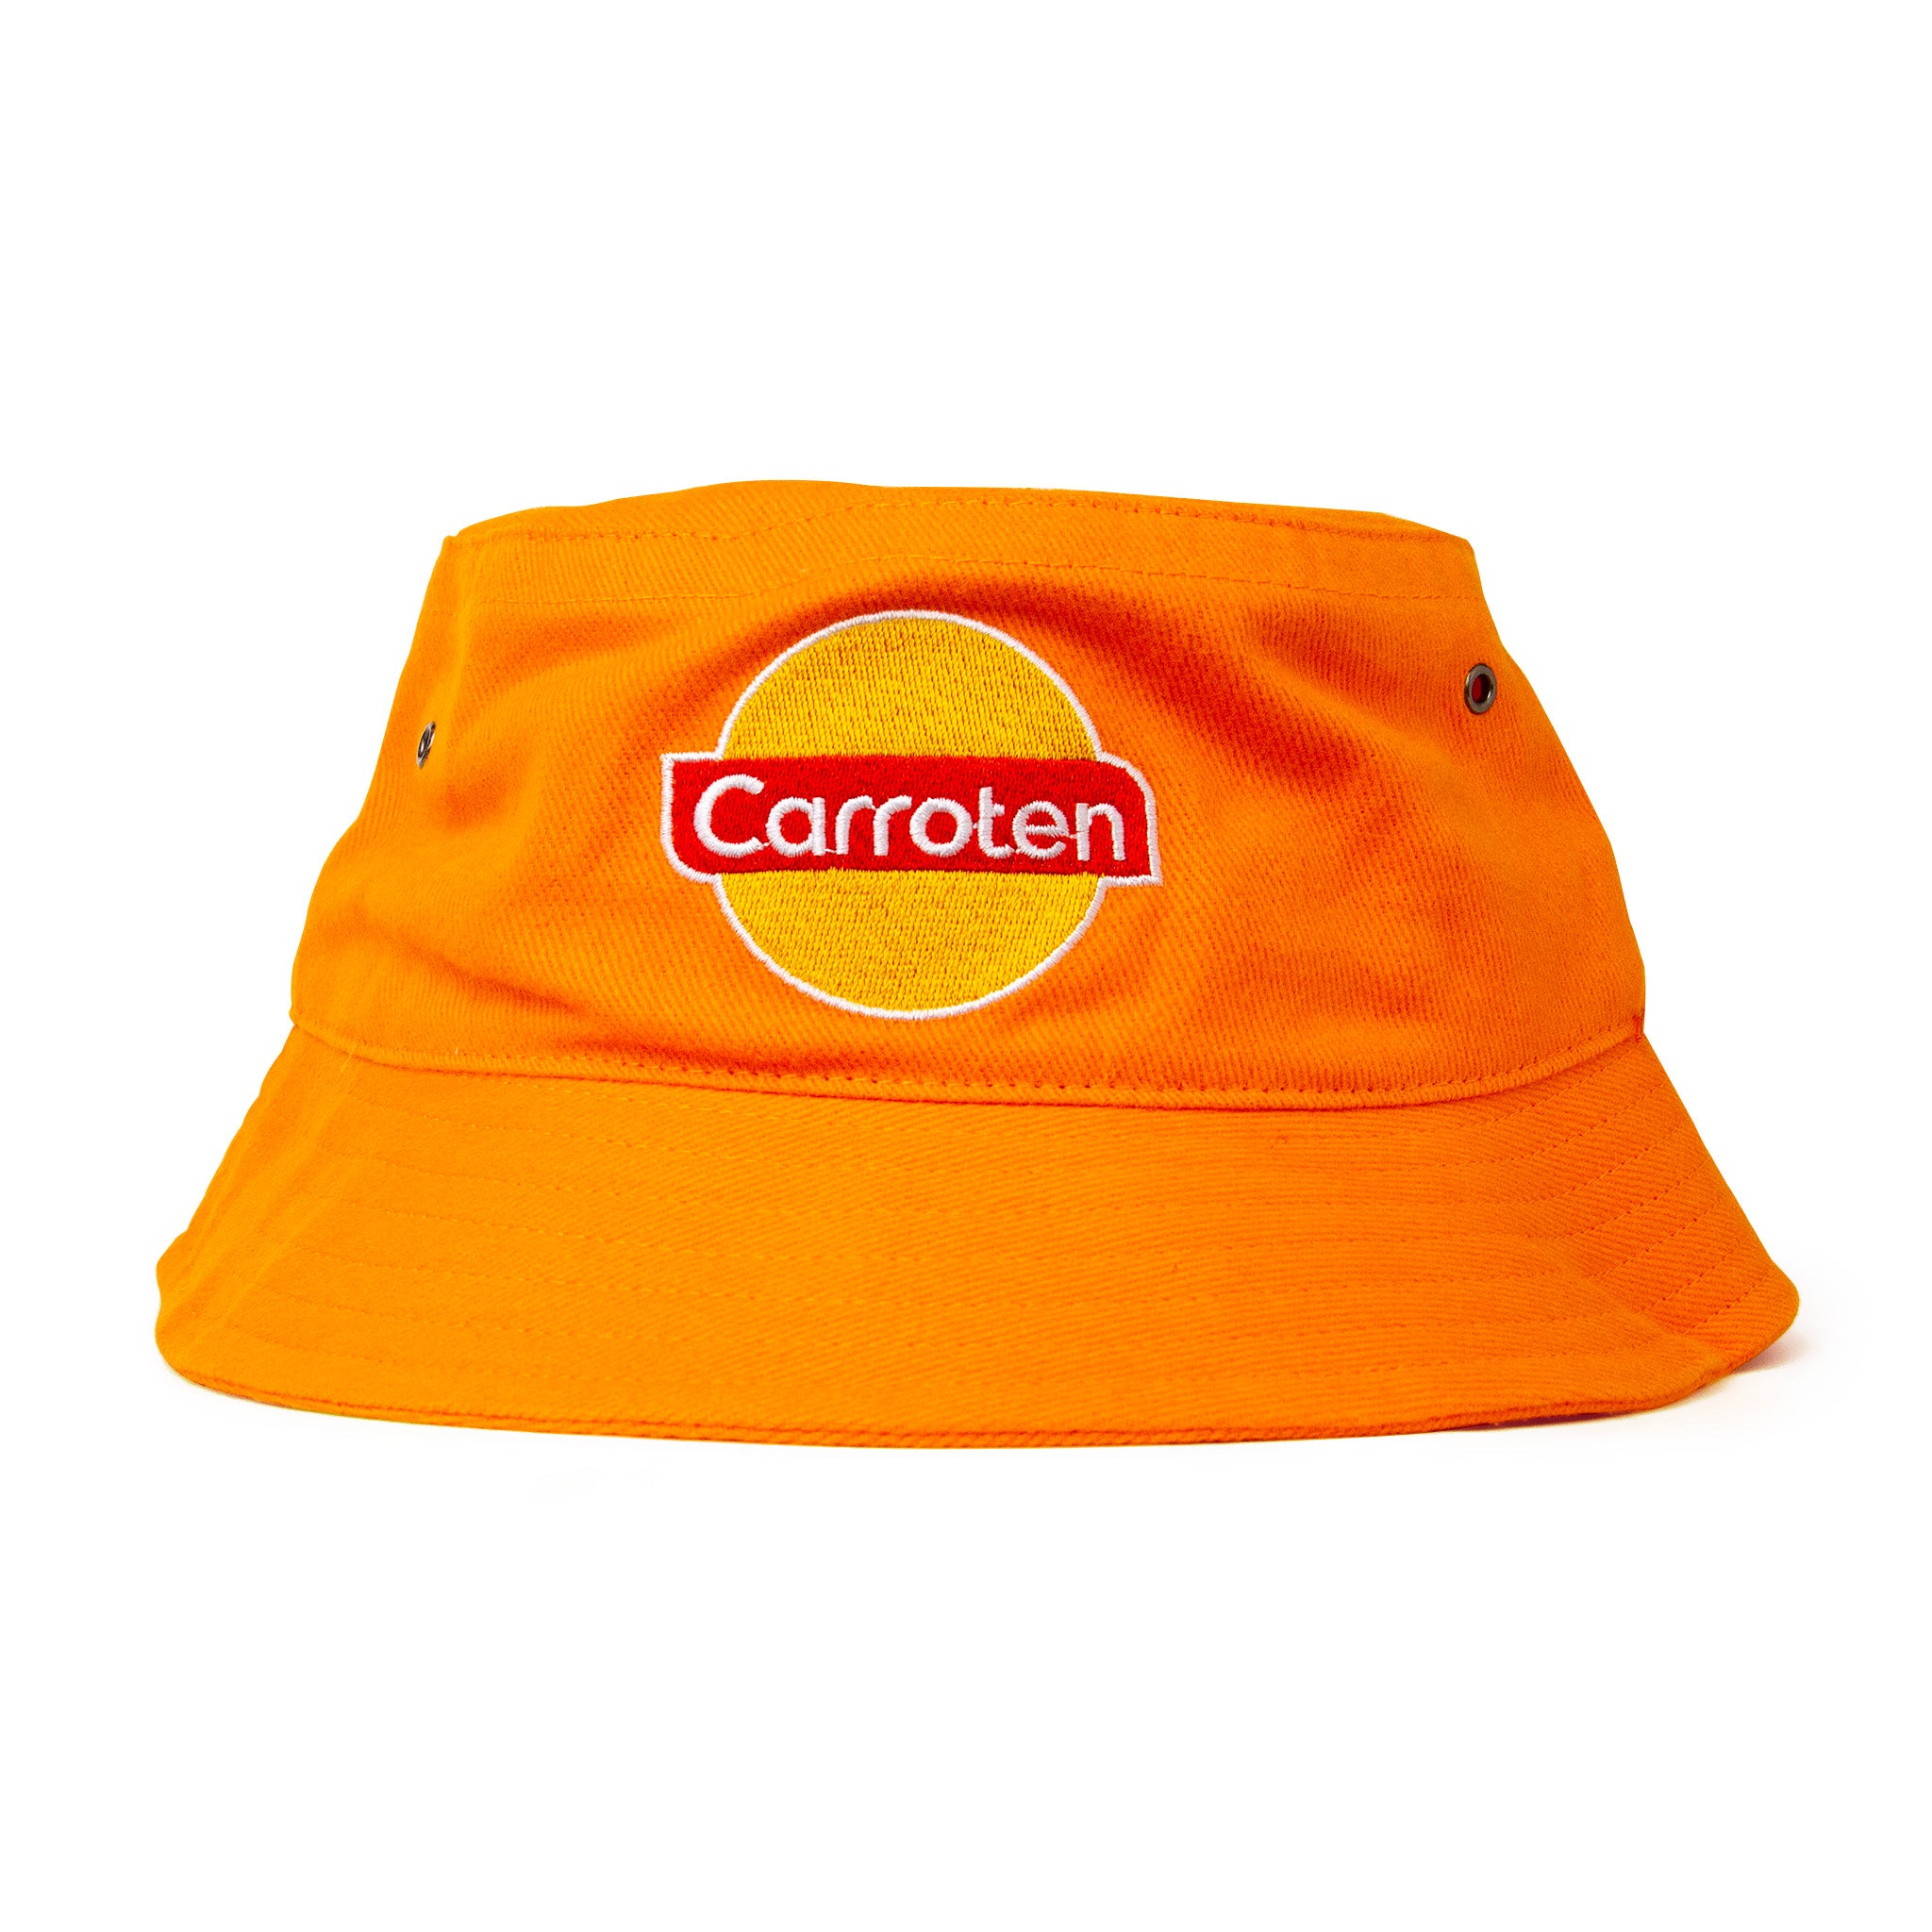 Carroten Orange Bucket Hat